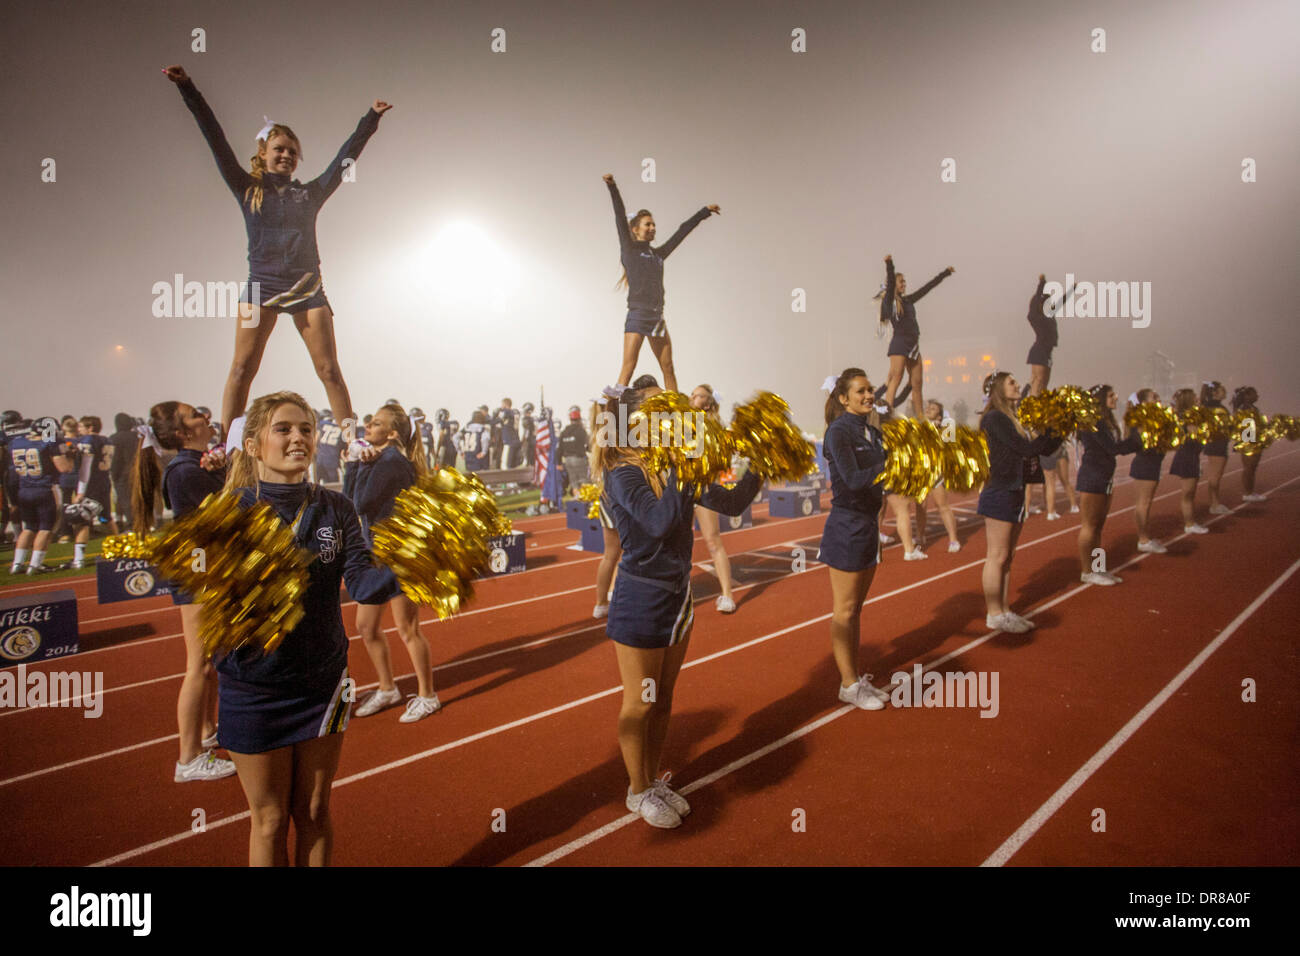 Cheerleaders divertir les spectateurs à un match de football de l'école nuit à San Juan Capistrano, CA, tenez les initiales du nom de l'école. Remarque 'flyers' sur les épaules des autres cheerleaders. Banque D'Images